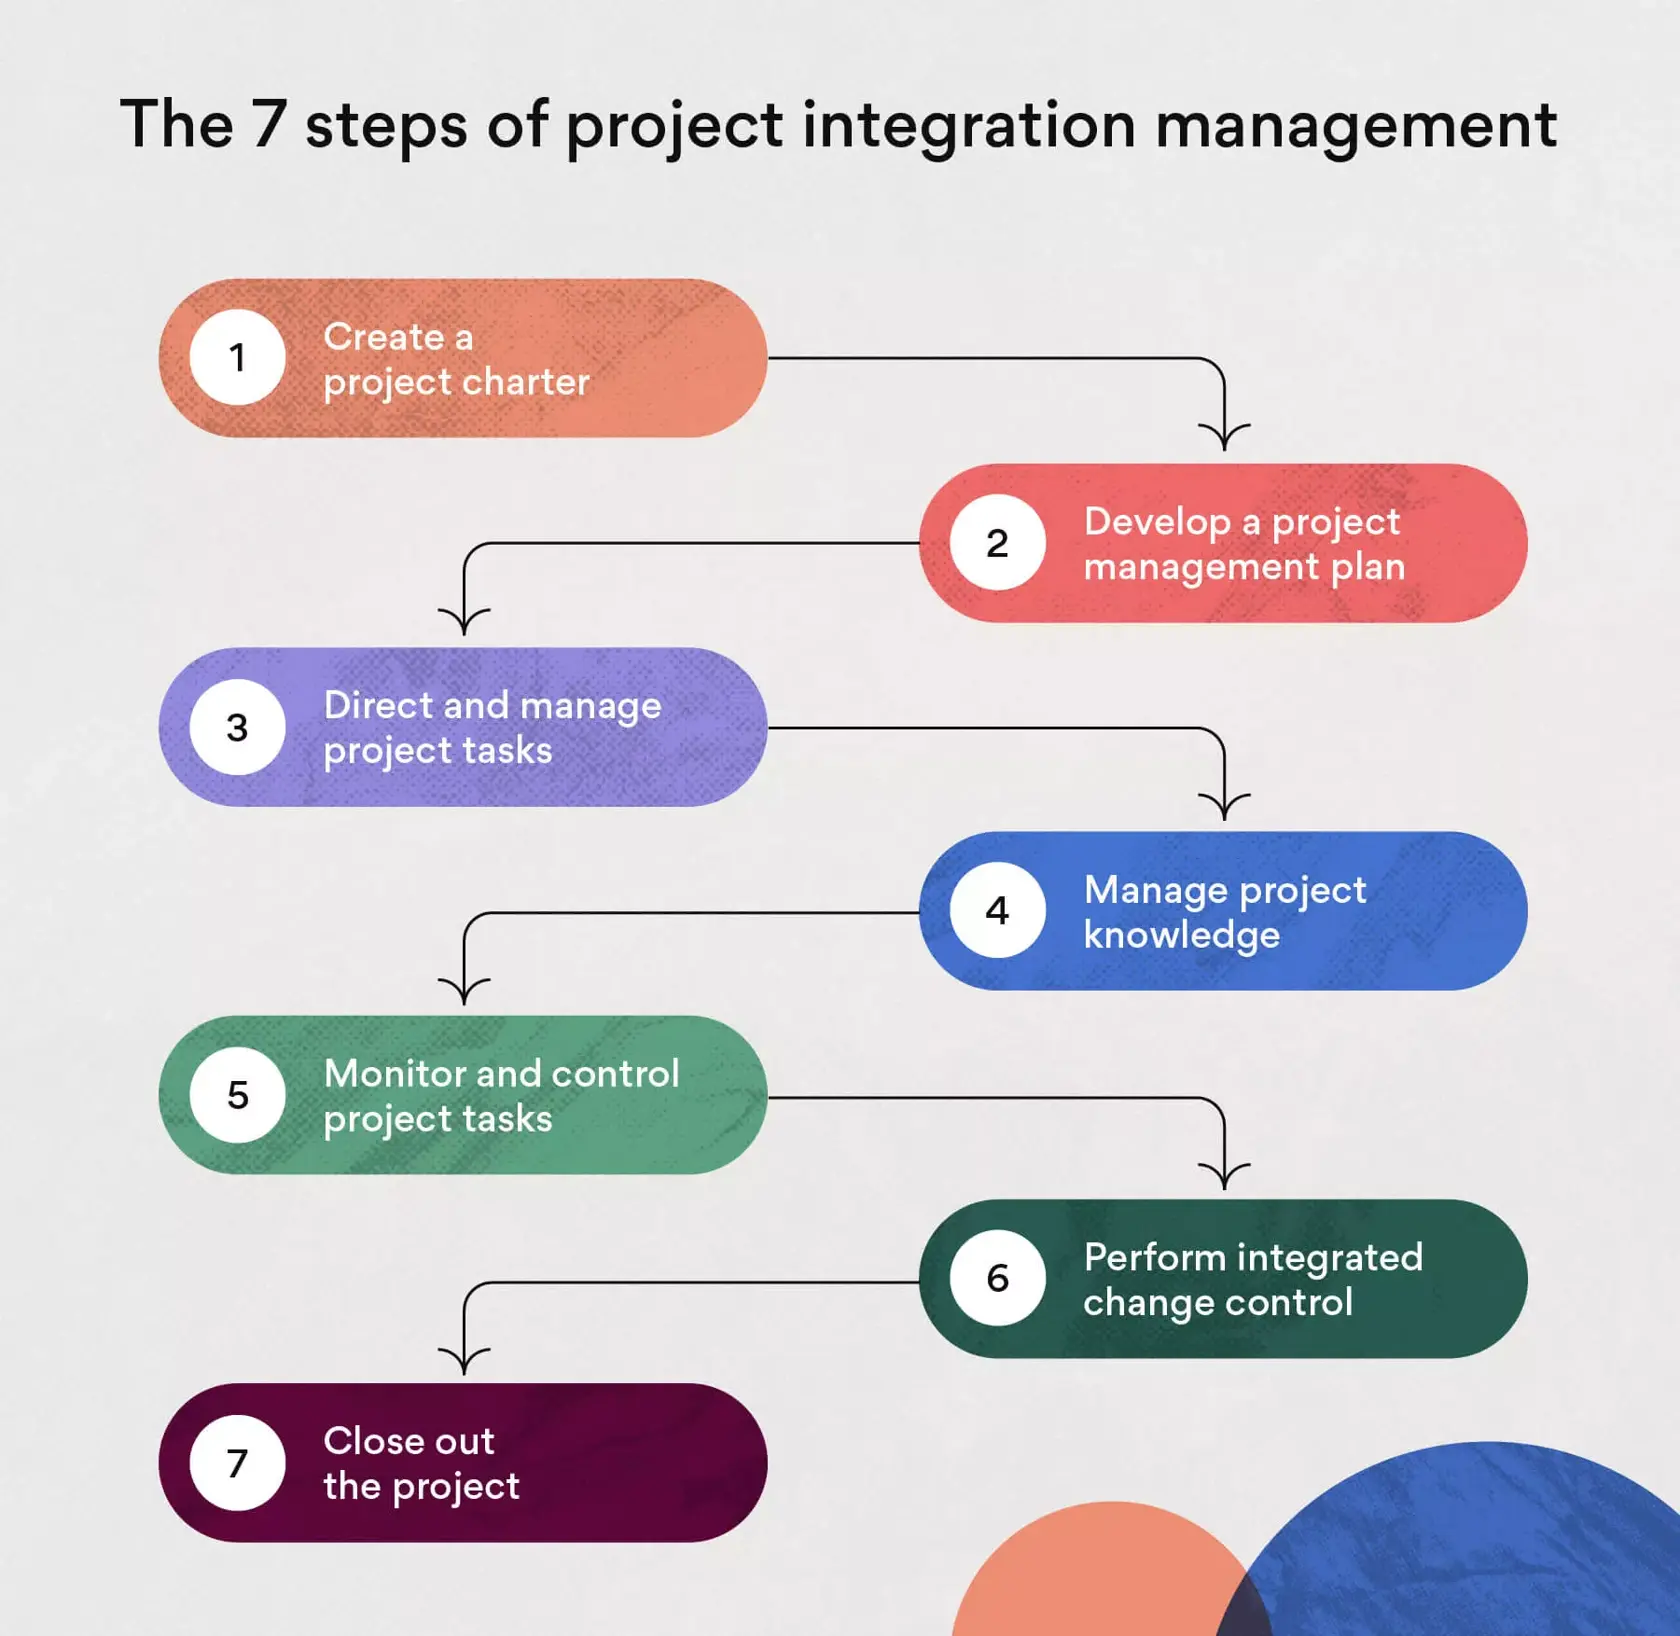 專案整合管理的 7 個步驟